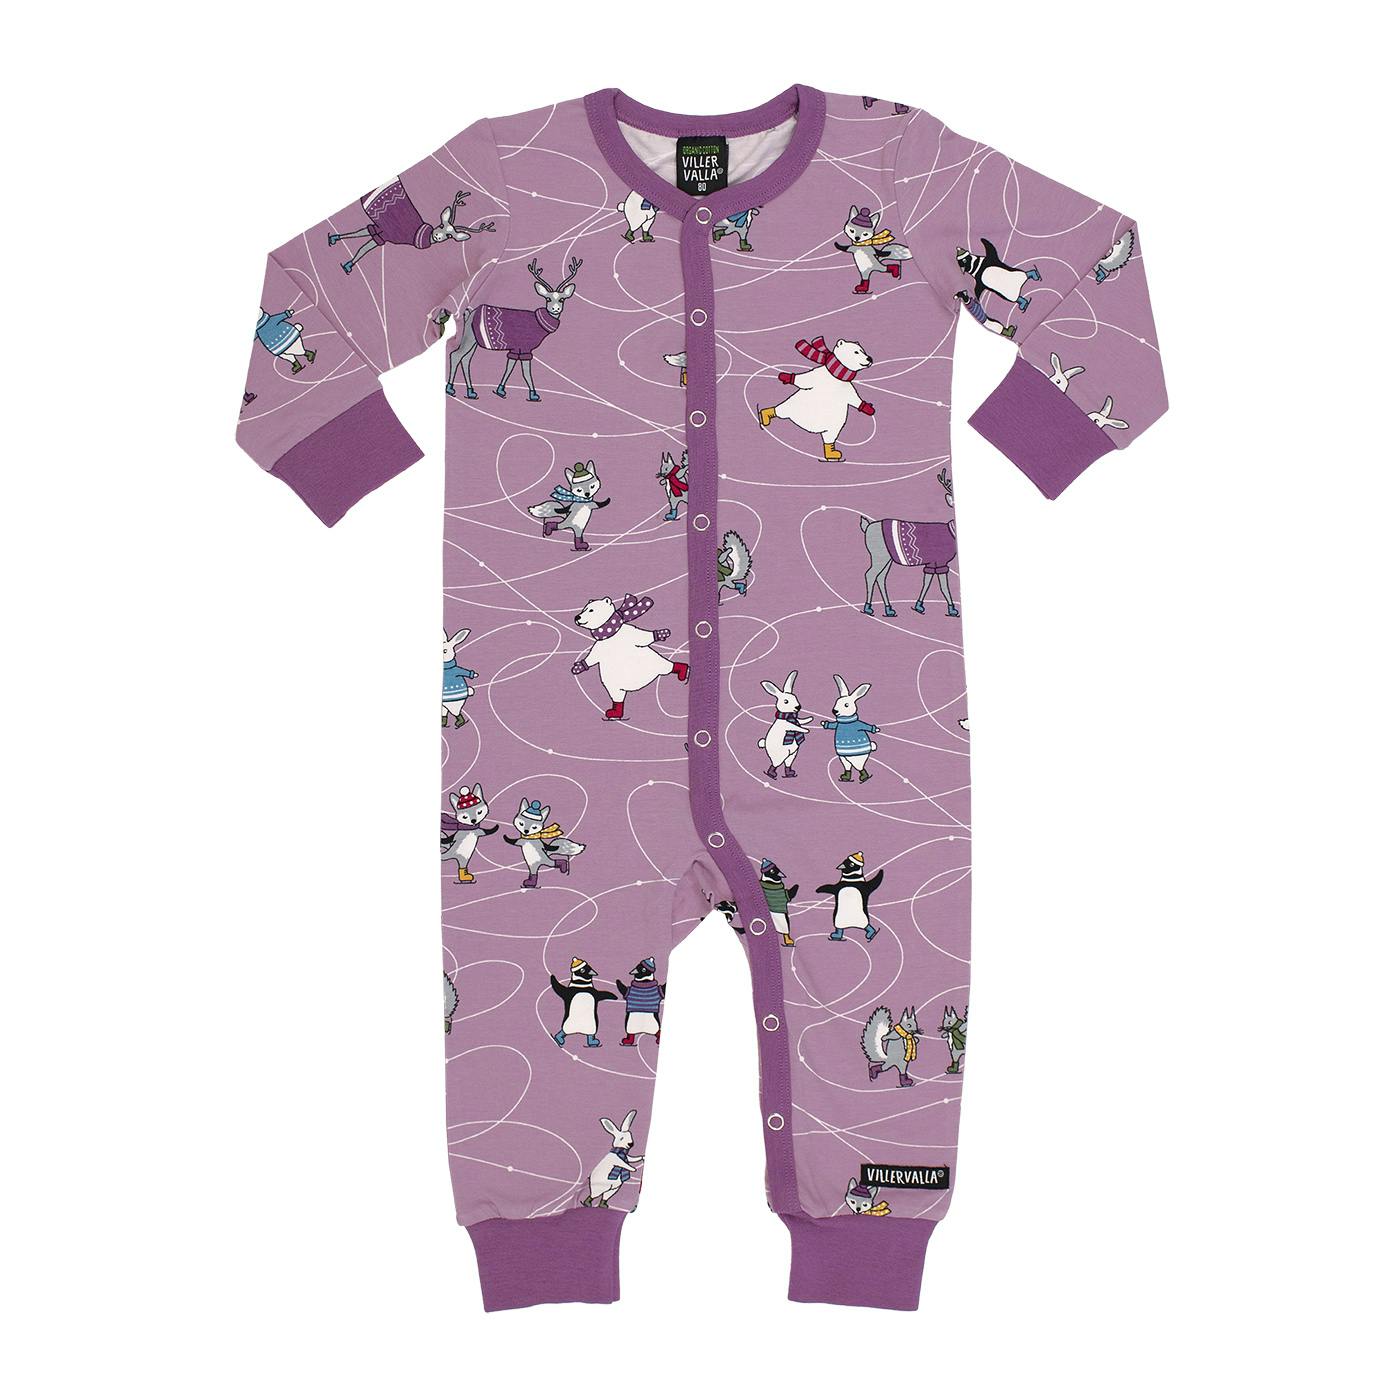 Söt heldress/pyjamas med djur på skridskor och en ljuvlig färg i lila från Villervalla.